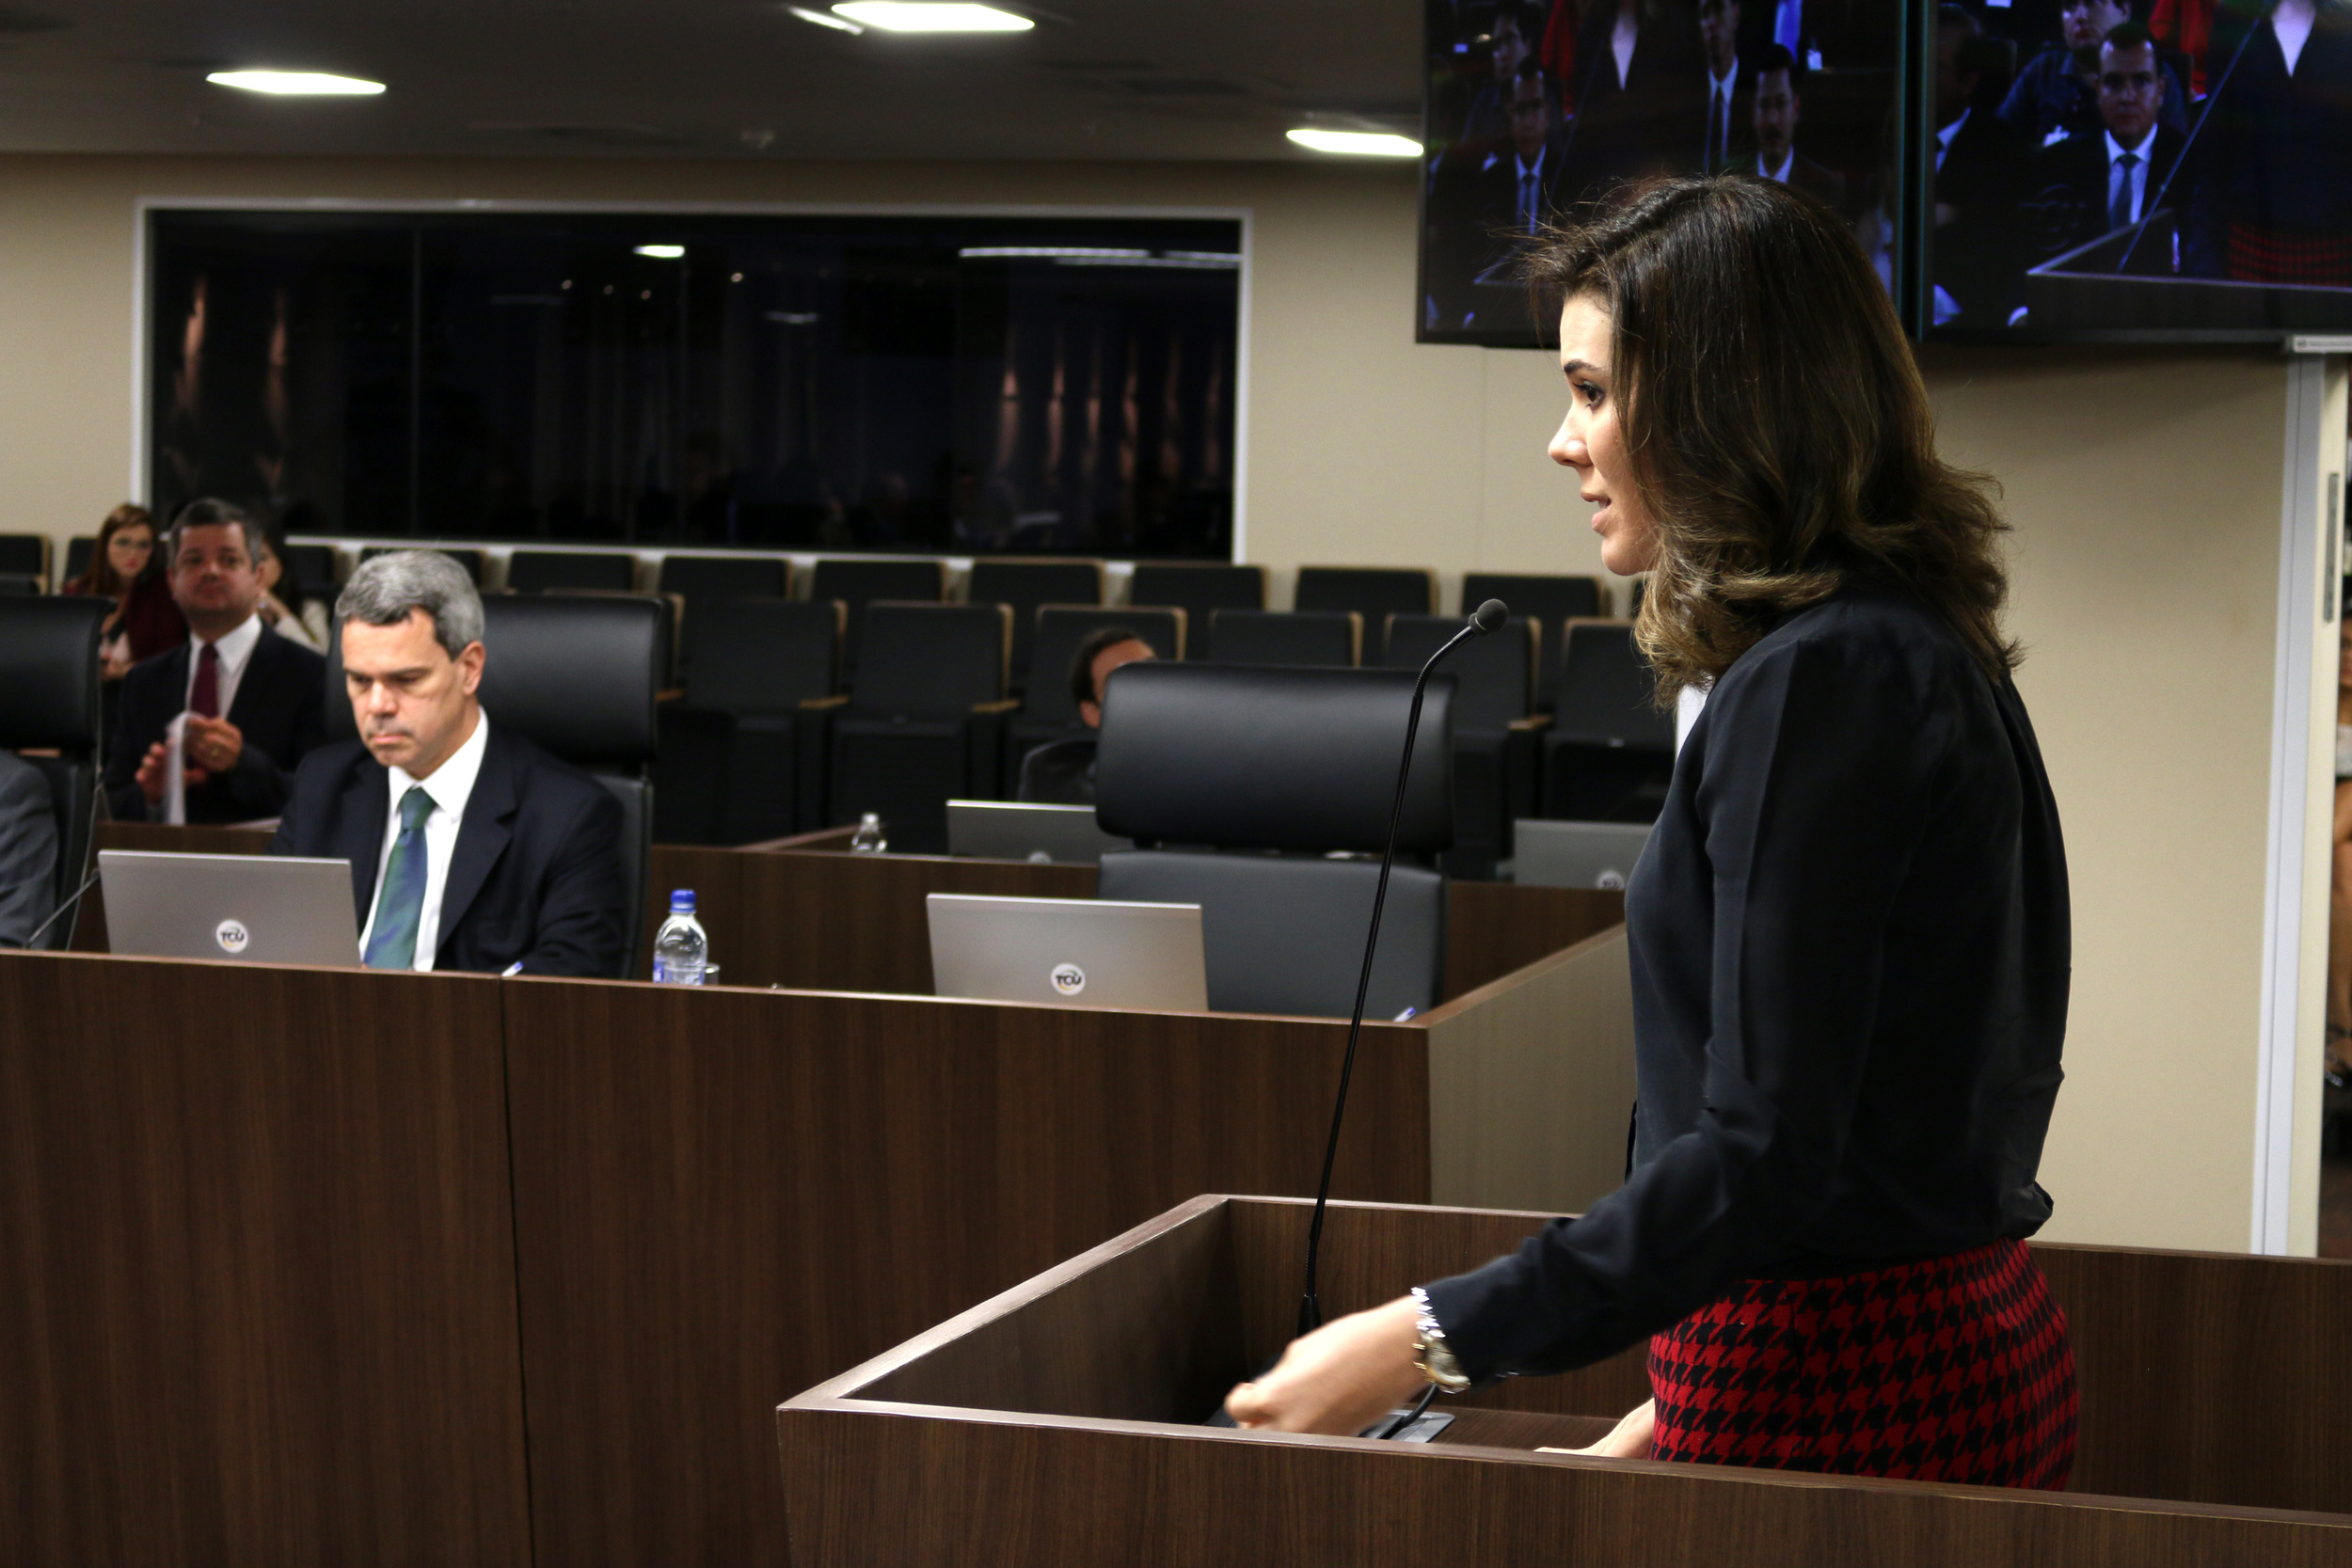  A advogada Julia Pauro em sustentação oral. Foto: Filipe Calmon / ANESP 